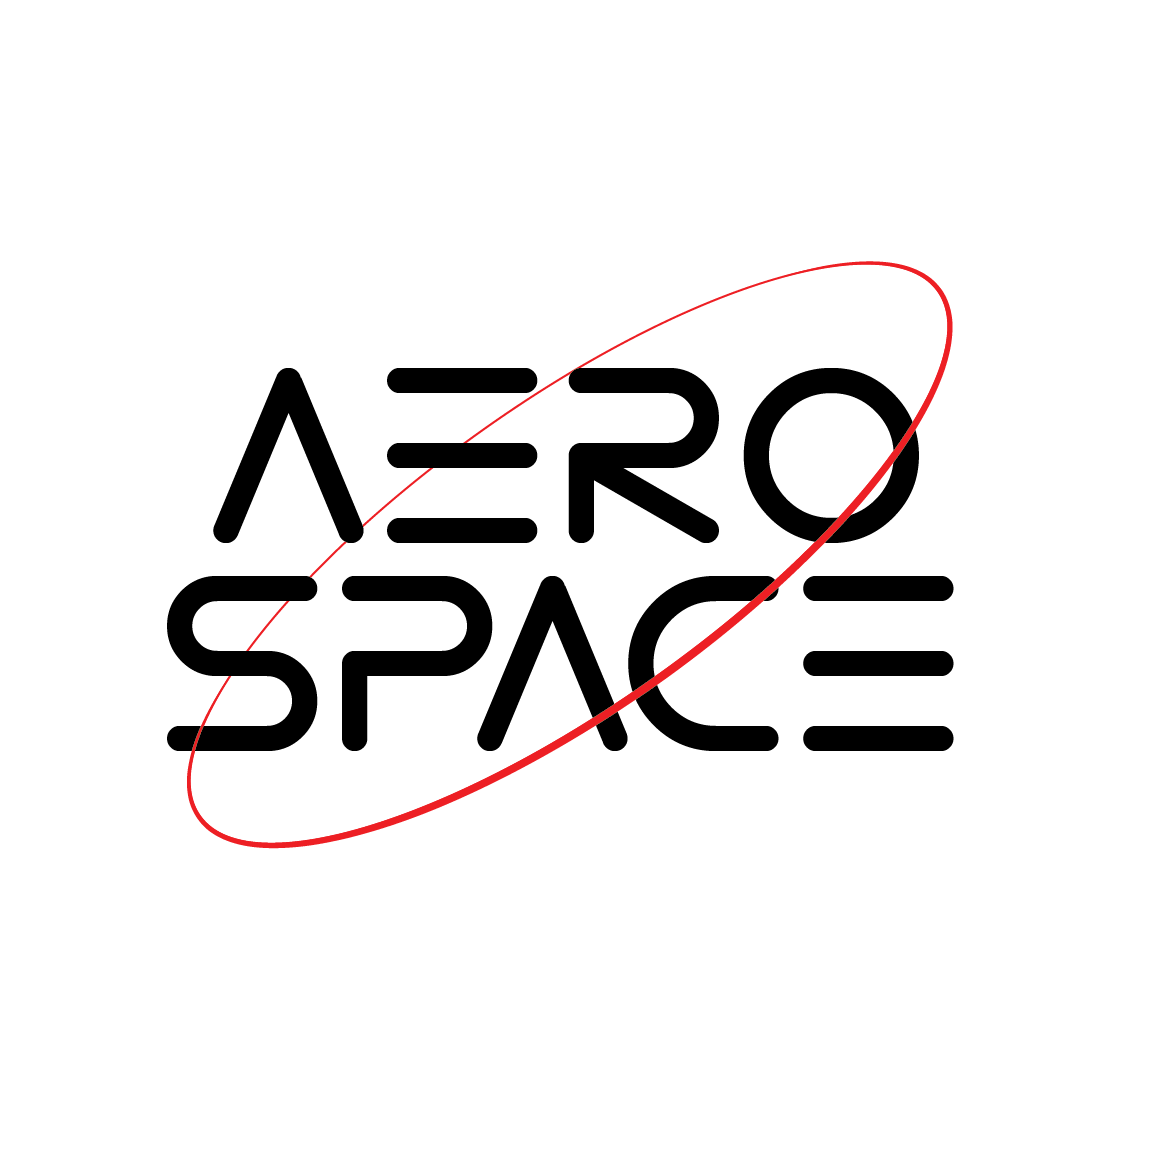 Aerospace Club